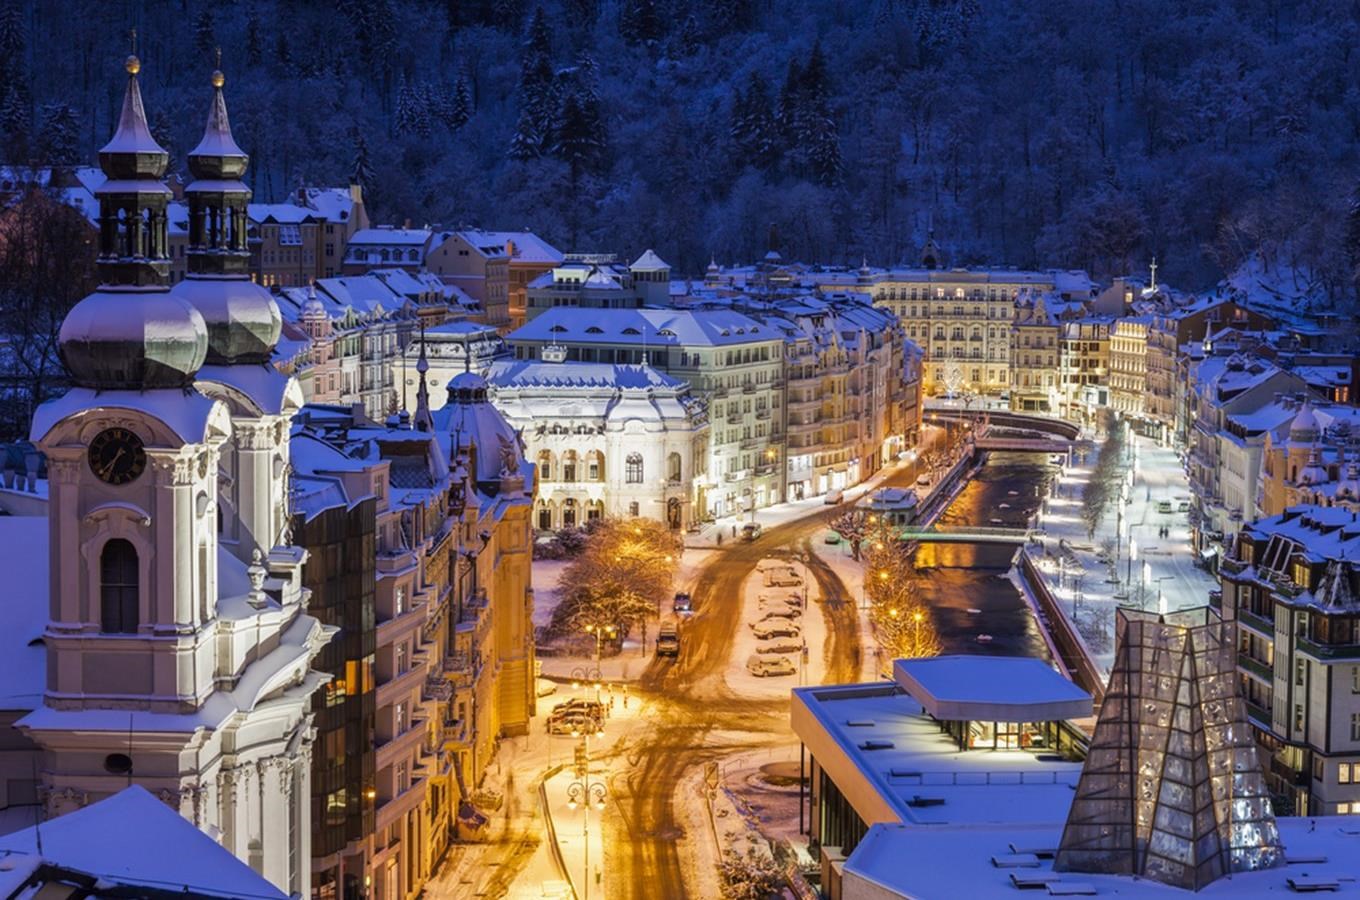 Vánoce v Karlových Varech – zimní nádhera lázeňských kolonád